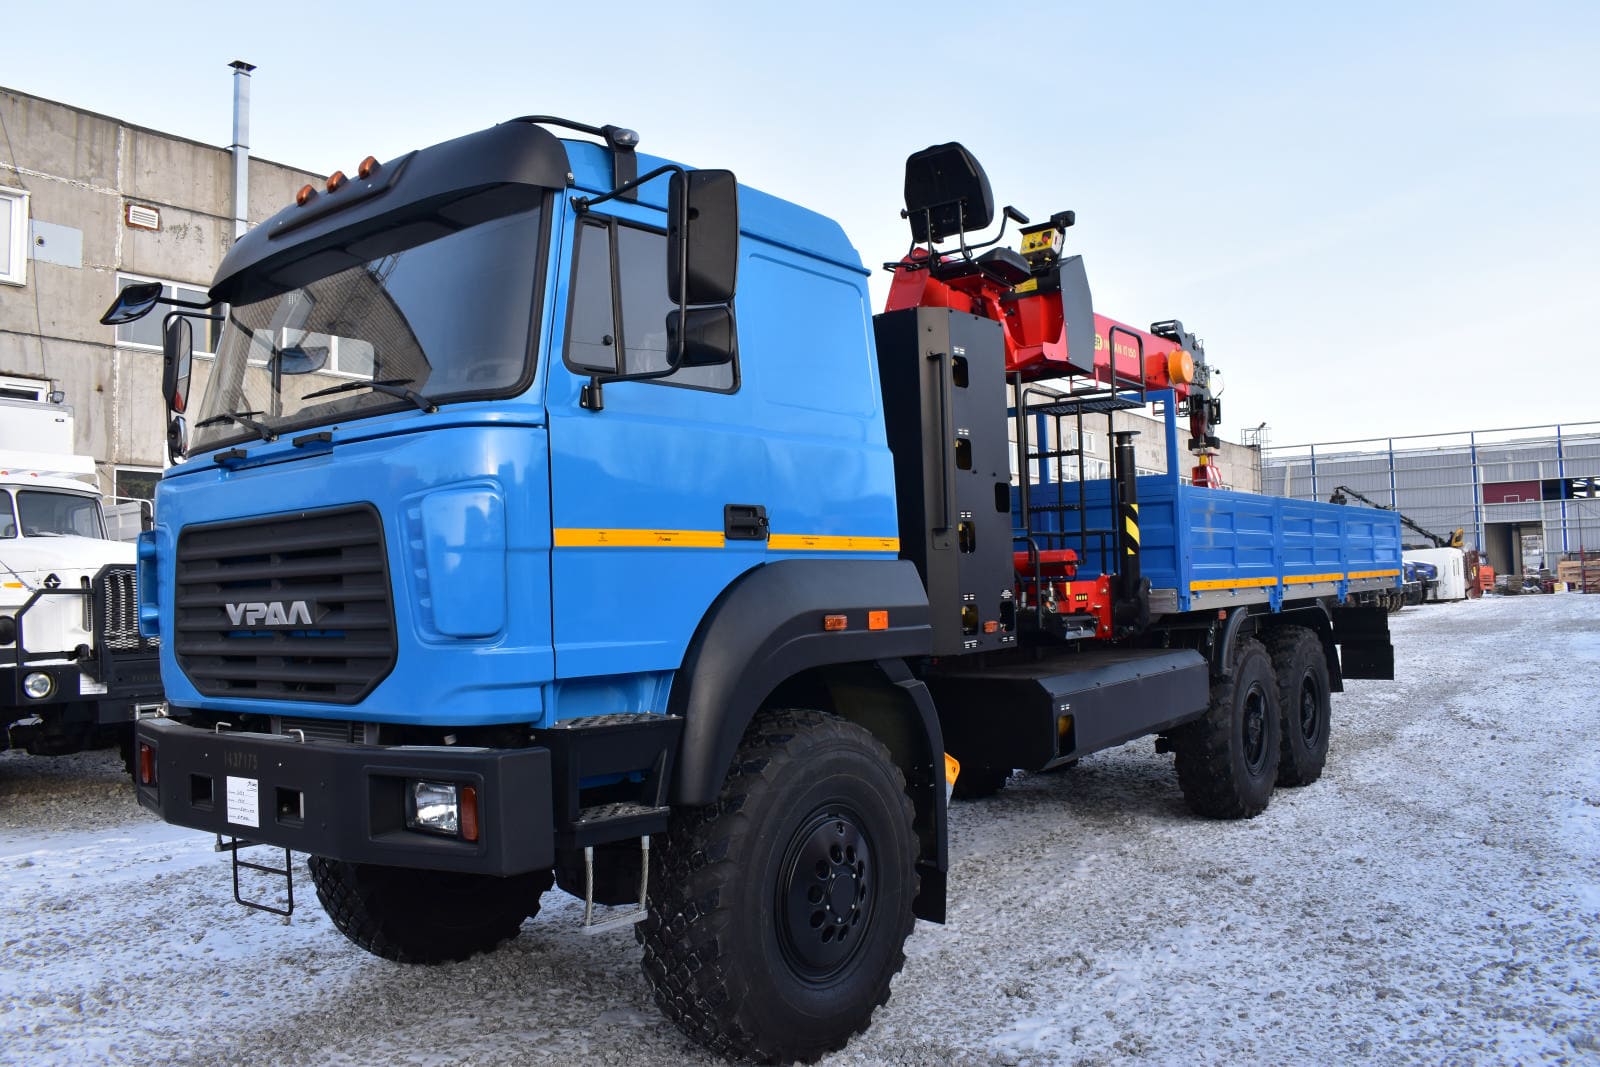 Бортовой автомобиль на базе Урал 4320 (метан) с КМУ ИТ-150